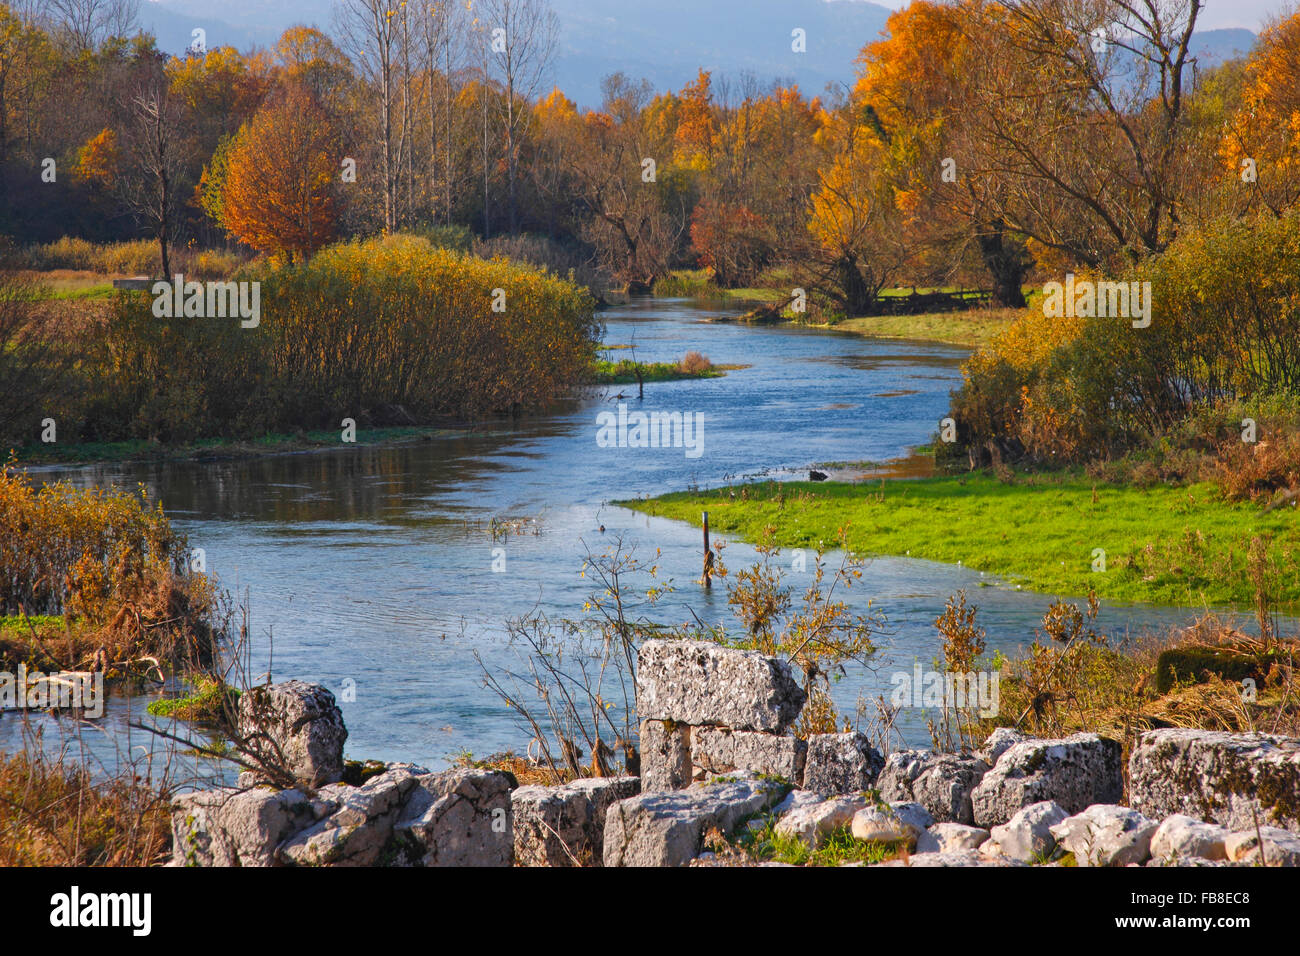 River landscapr.Gacka river in lika, Croatia Stock Photo